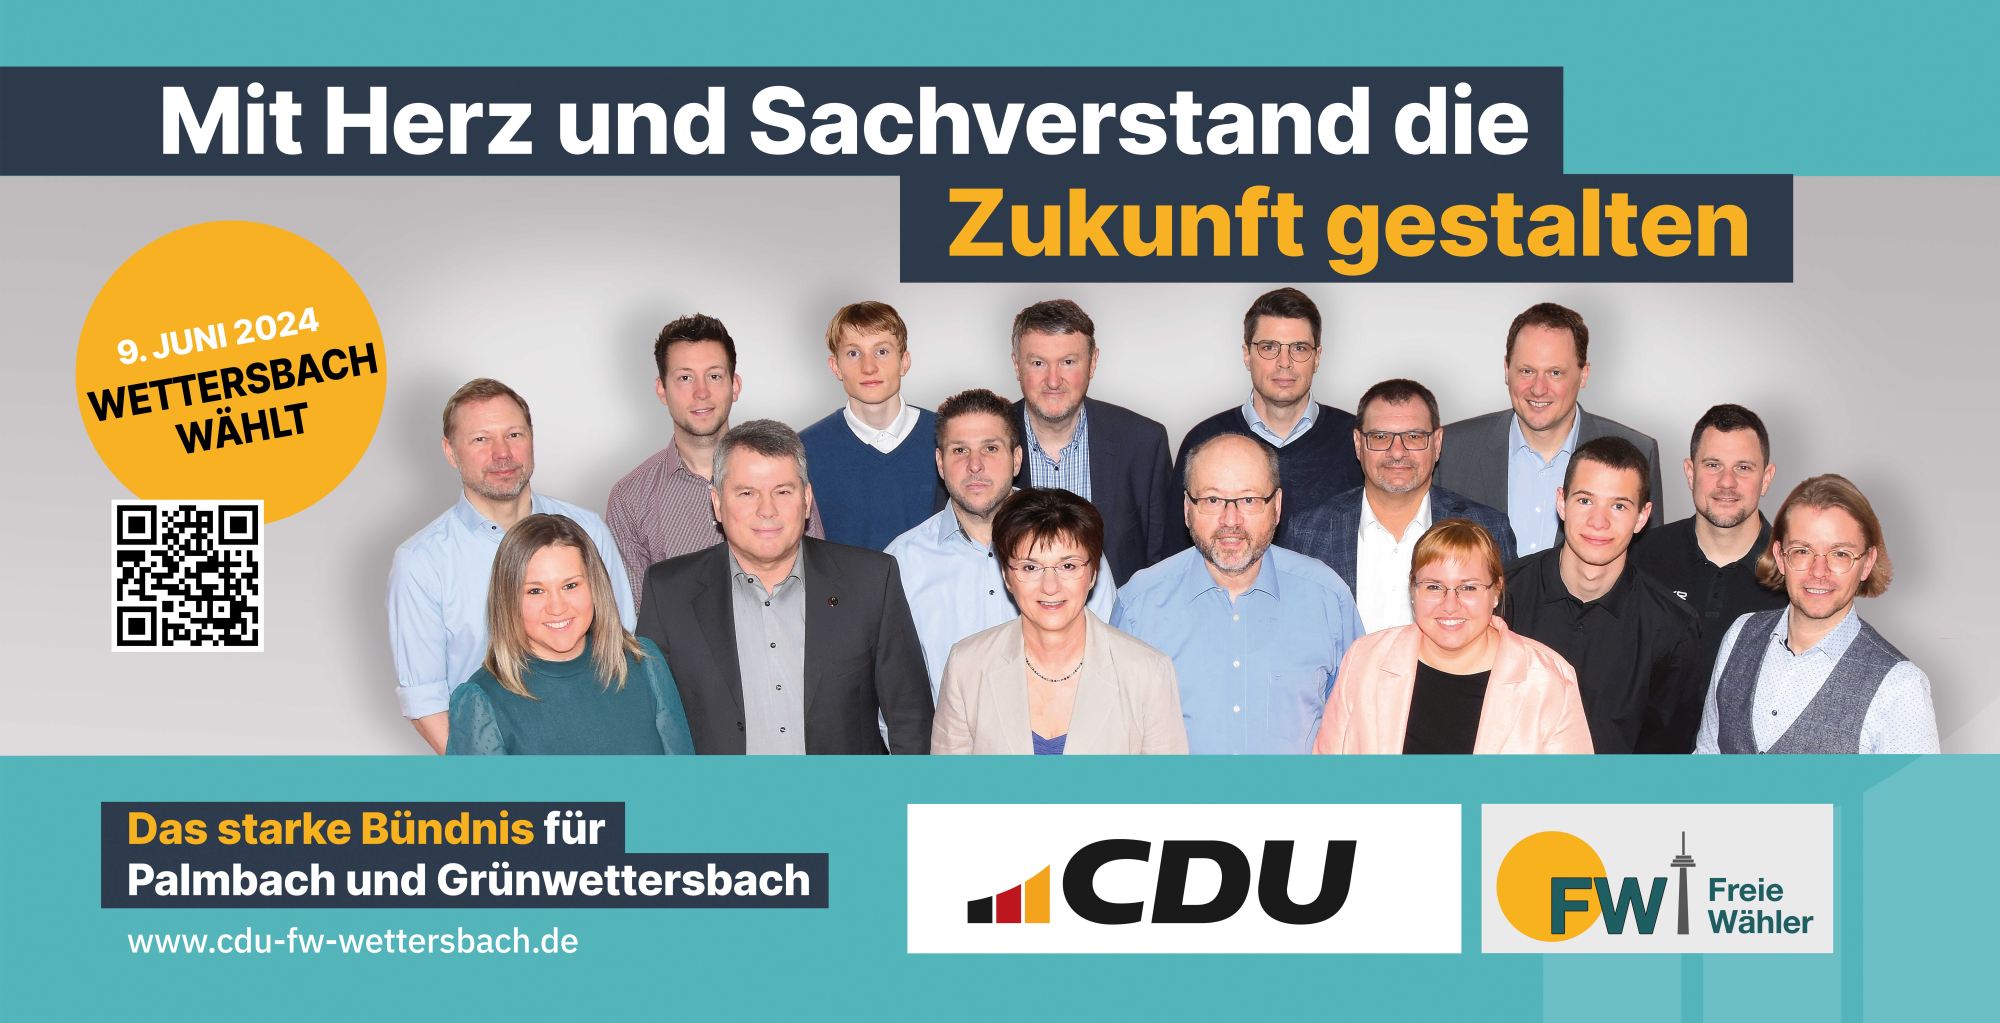 CDU/FW-Wettersbach